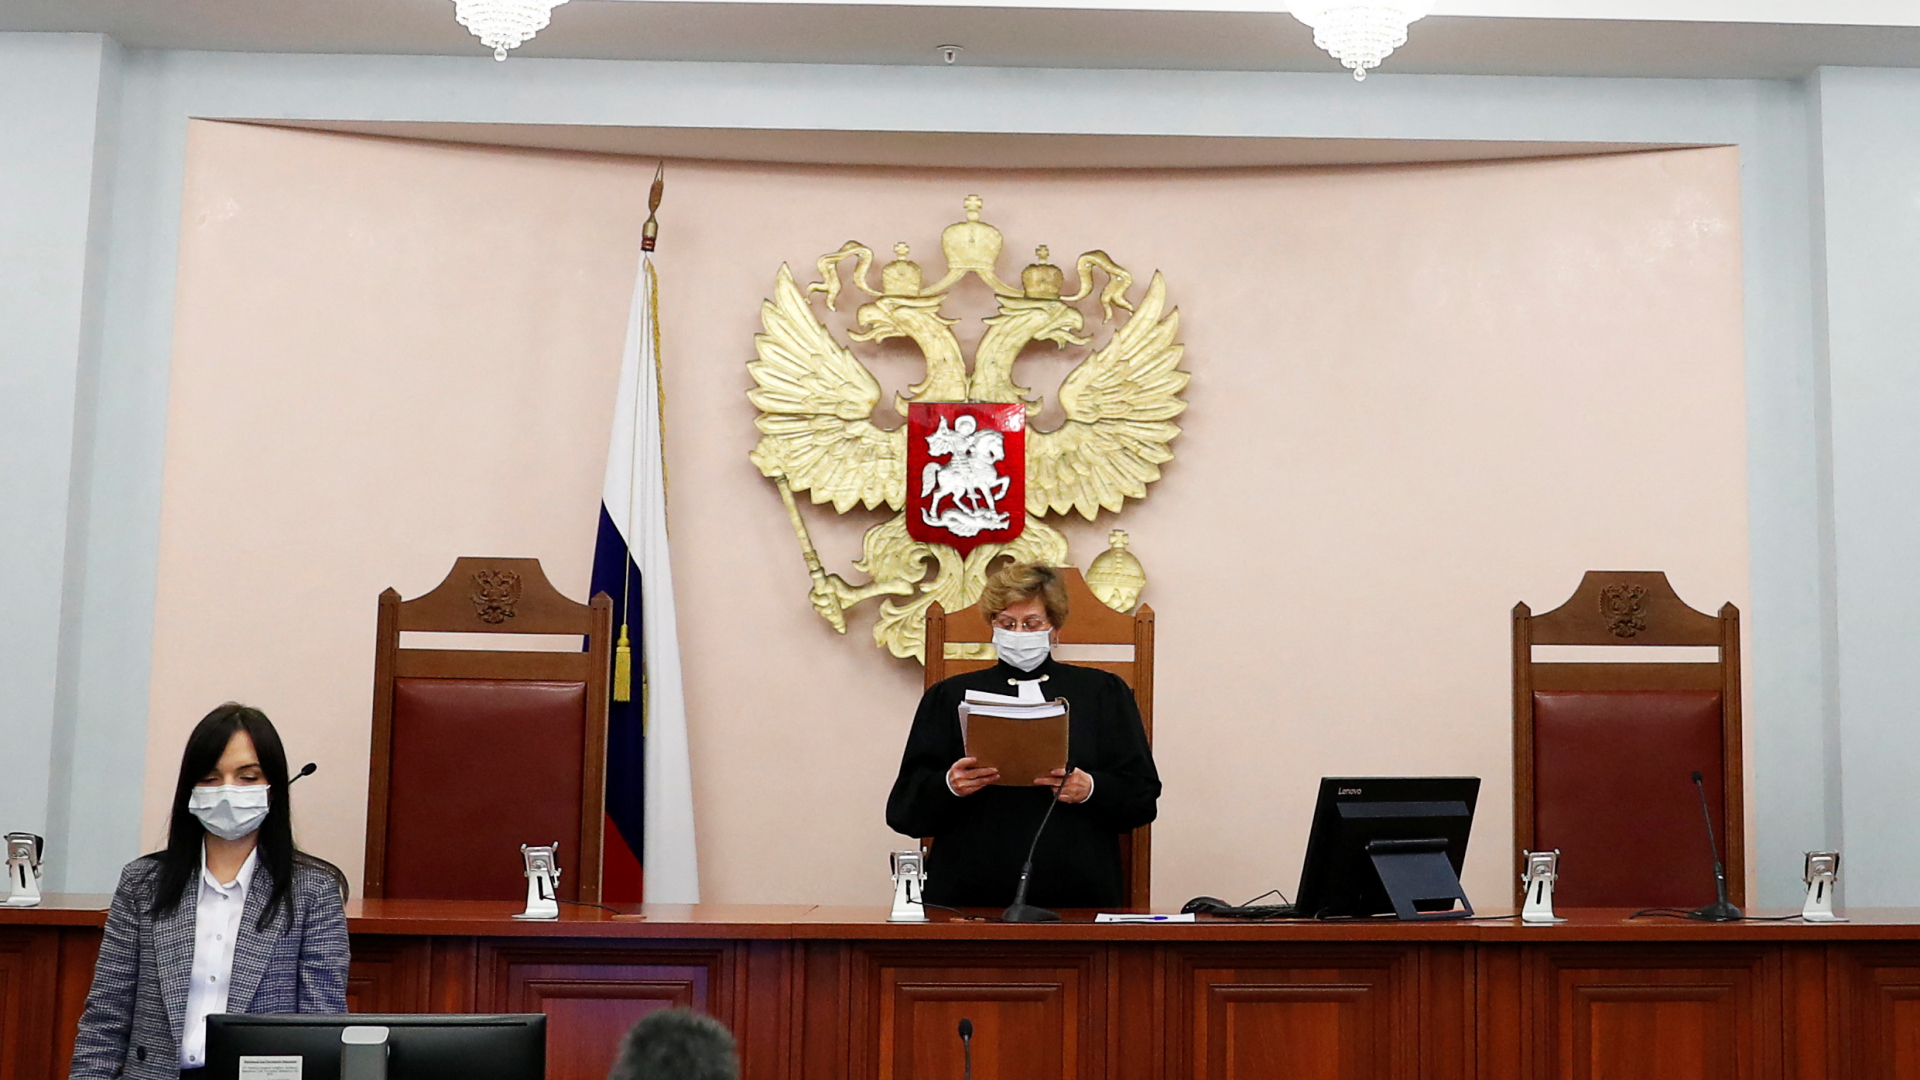 Nach Urteil in Russland: Empörung über Auflösung von Memorial